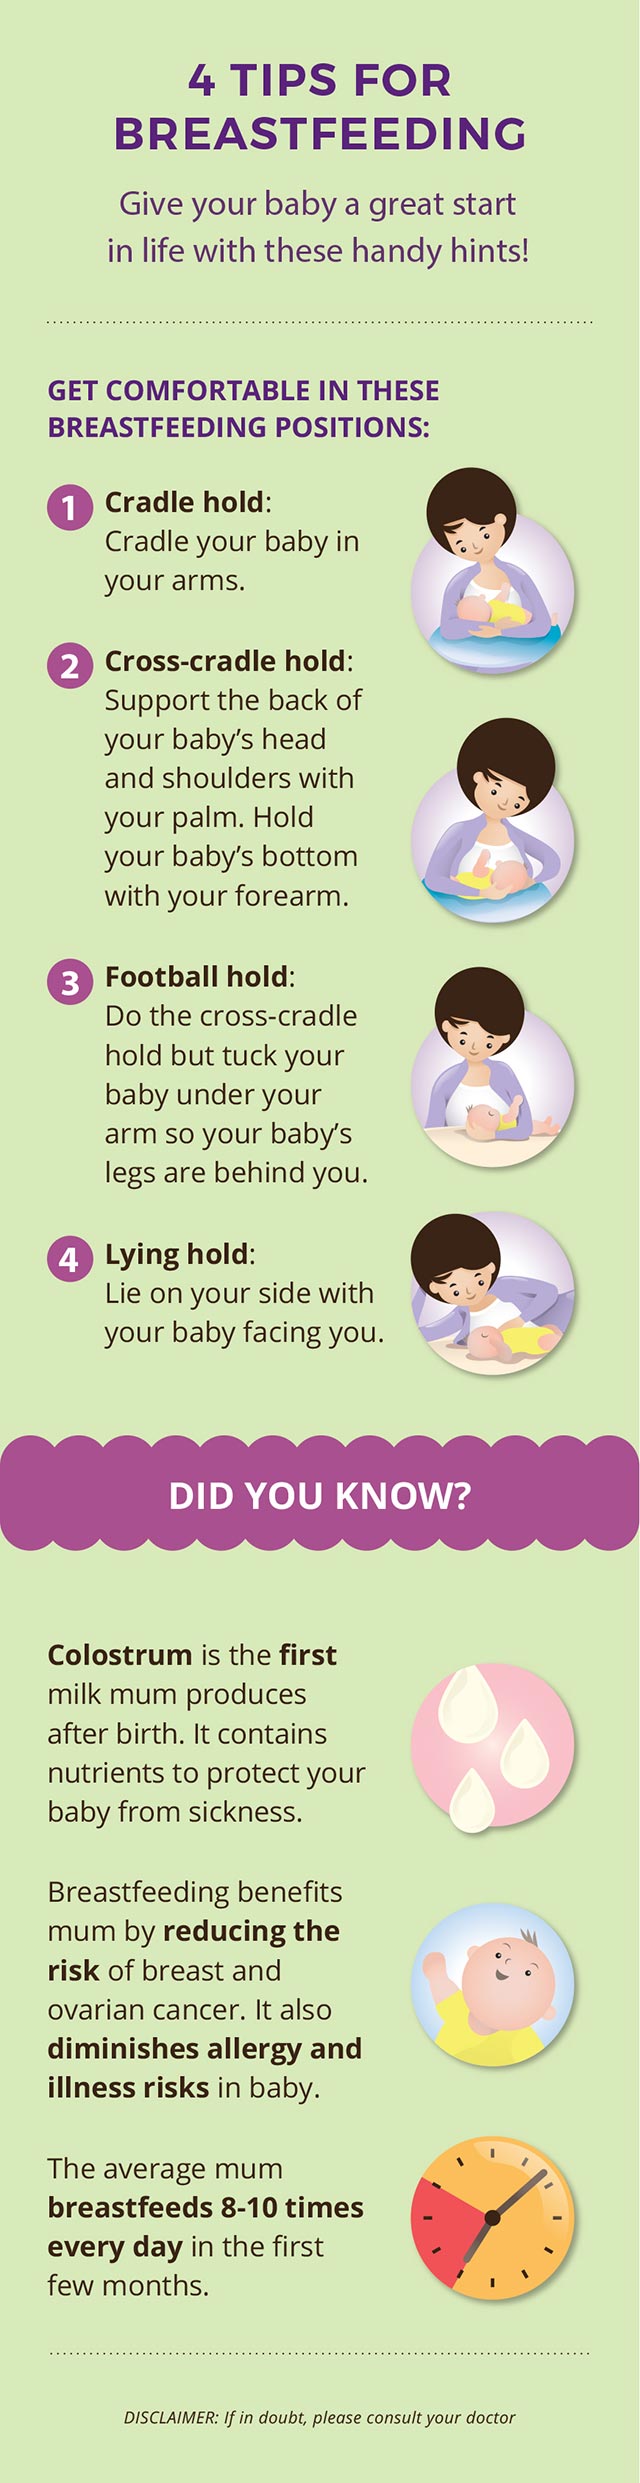 4 tips for breastfeeding holds